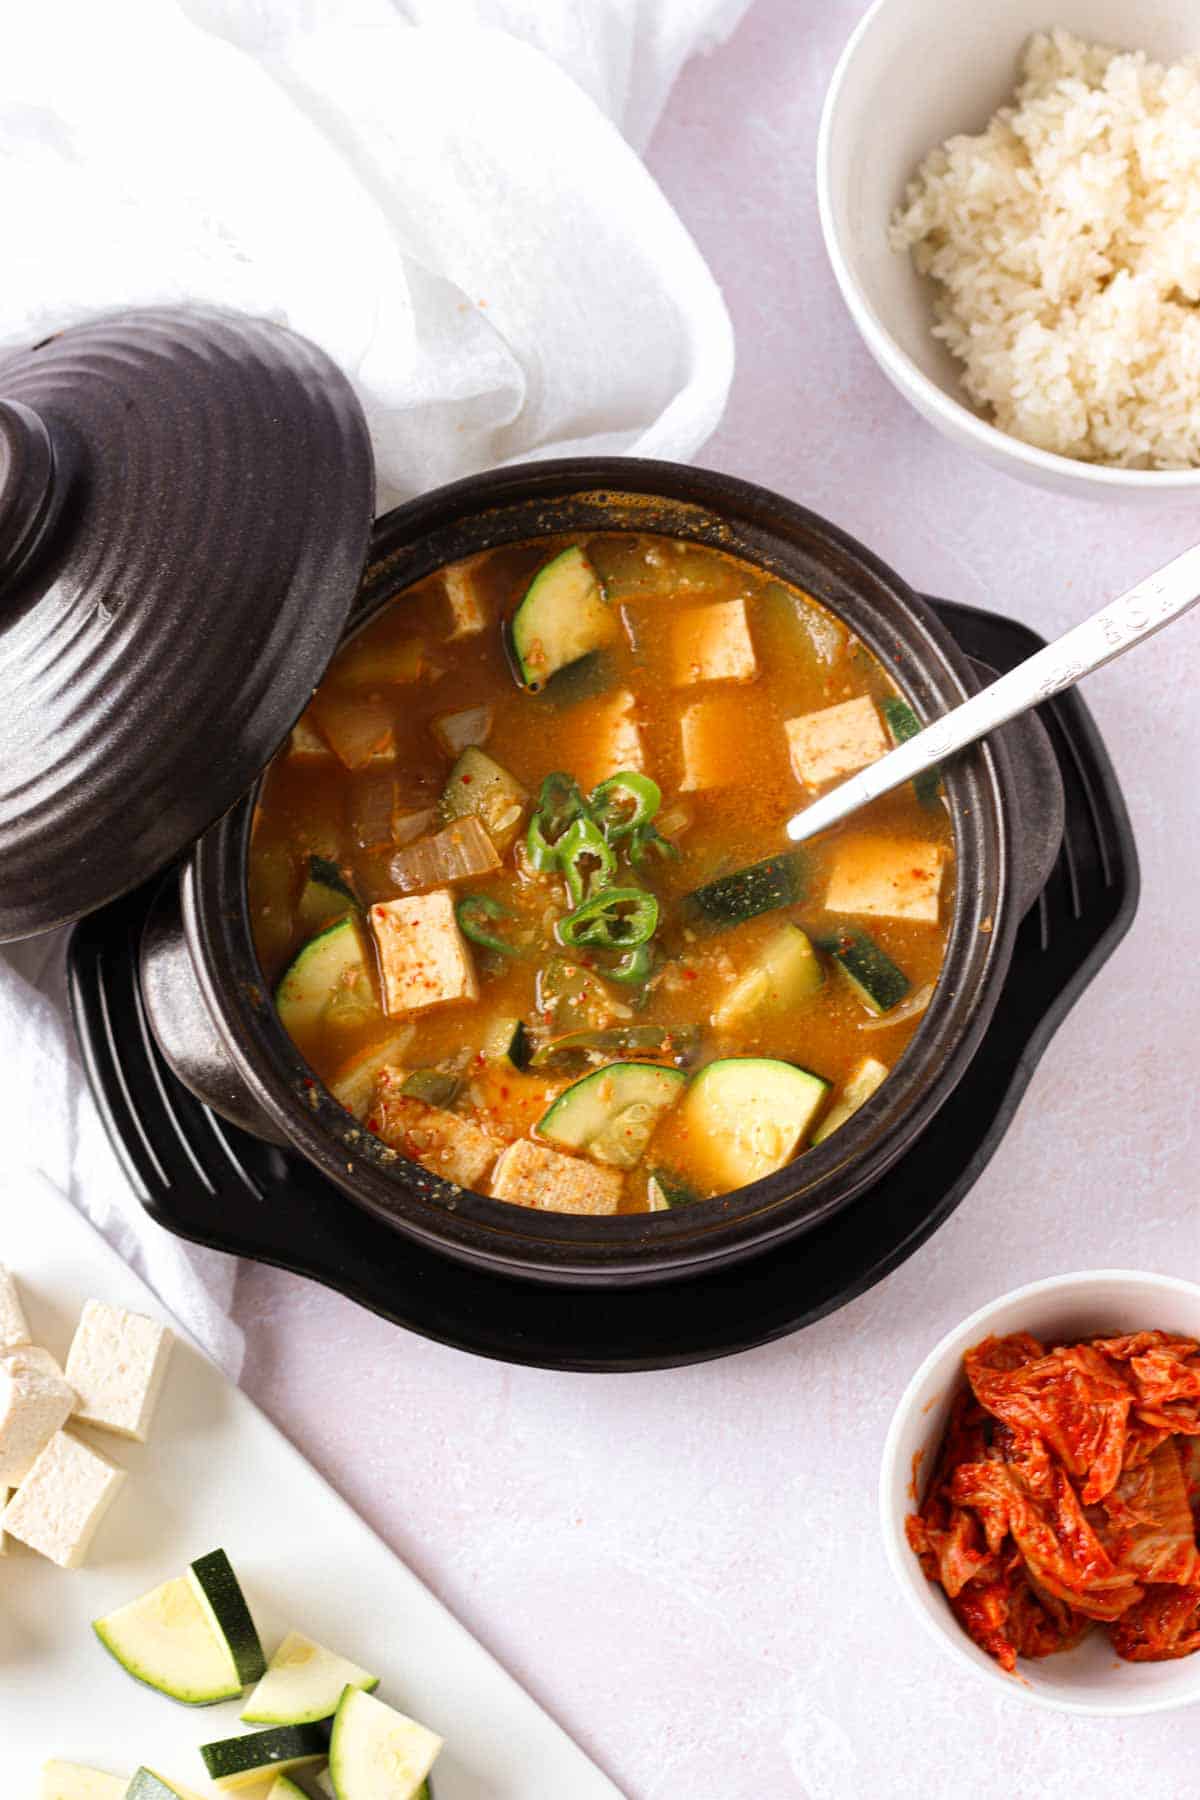 Doenjang Jjigae (Korean Soybean Paste Stew)